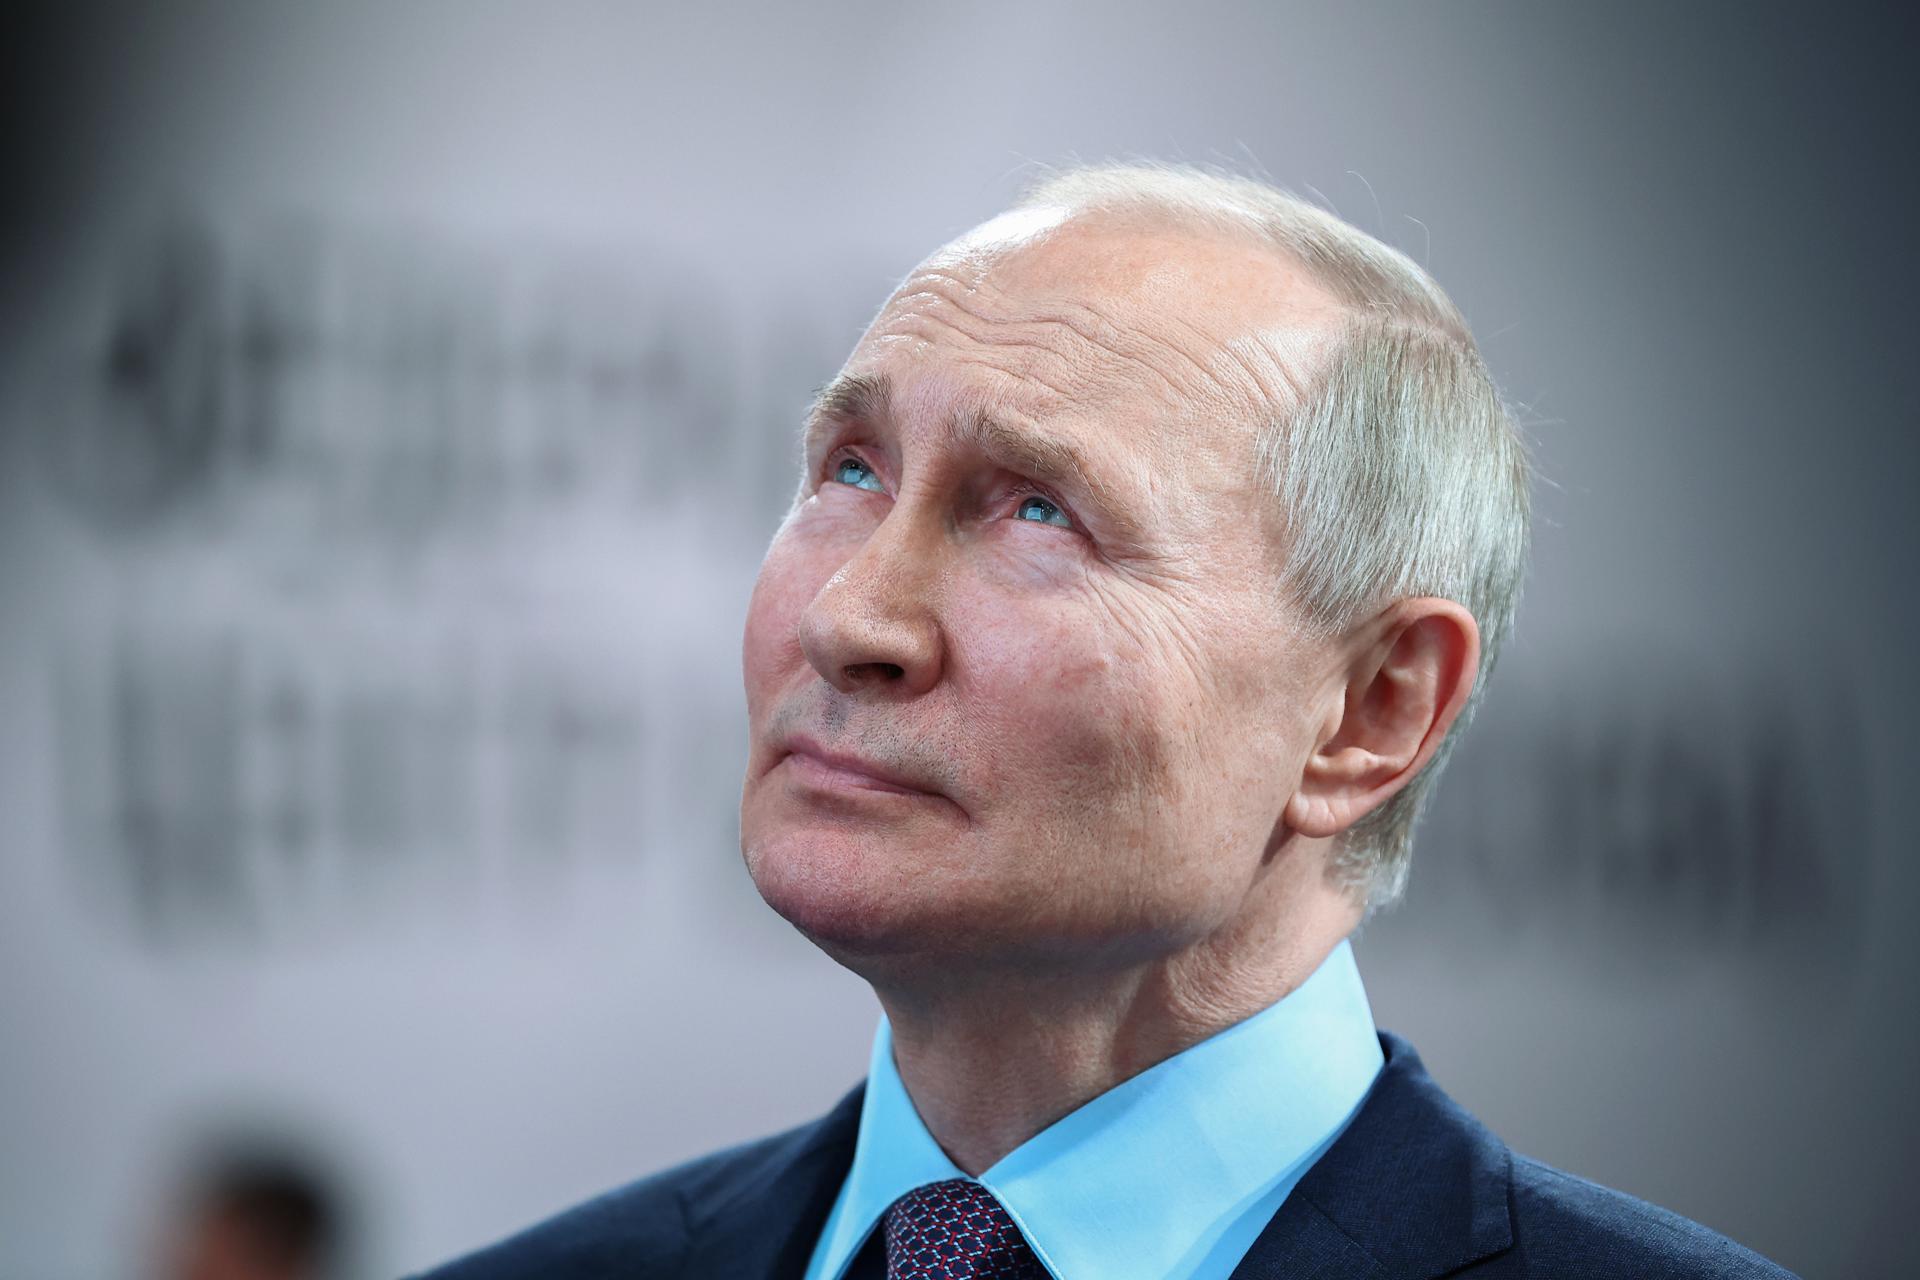 Putin estaría dispuesto a discutir soluciones para acabar con la guerra en Ucrania, anuncia el Kremlin